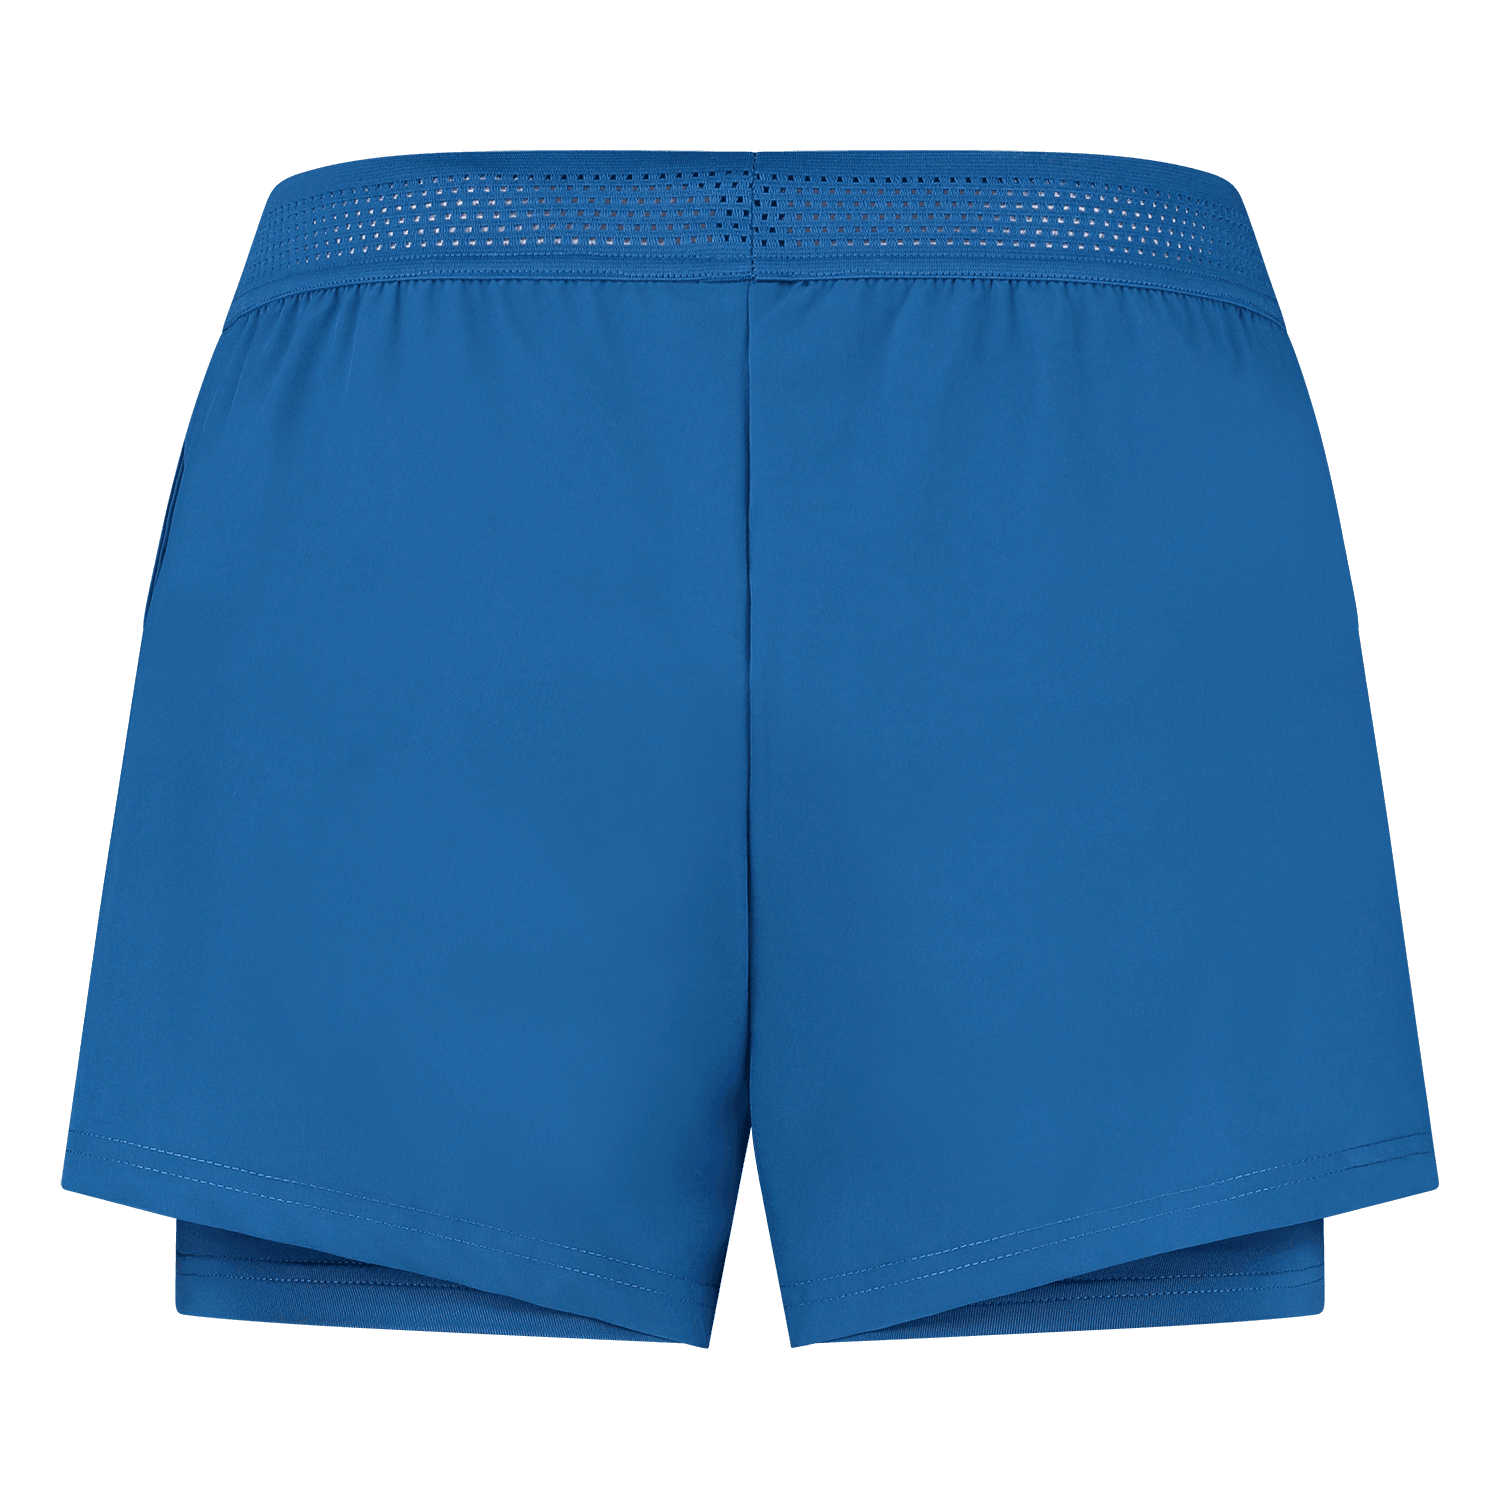 K-Swiss Womens Hypercourt Shorts - Classic Blue - Bassline Retail